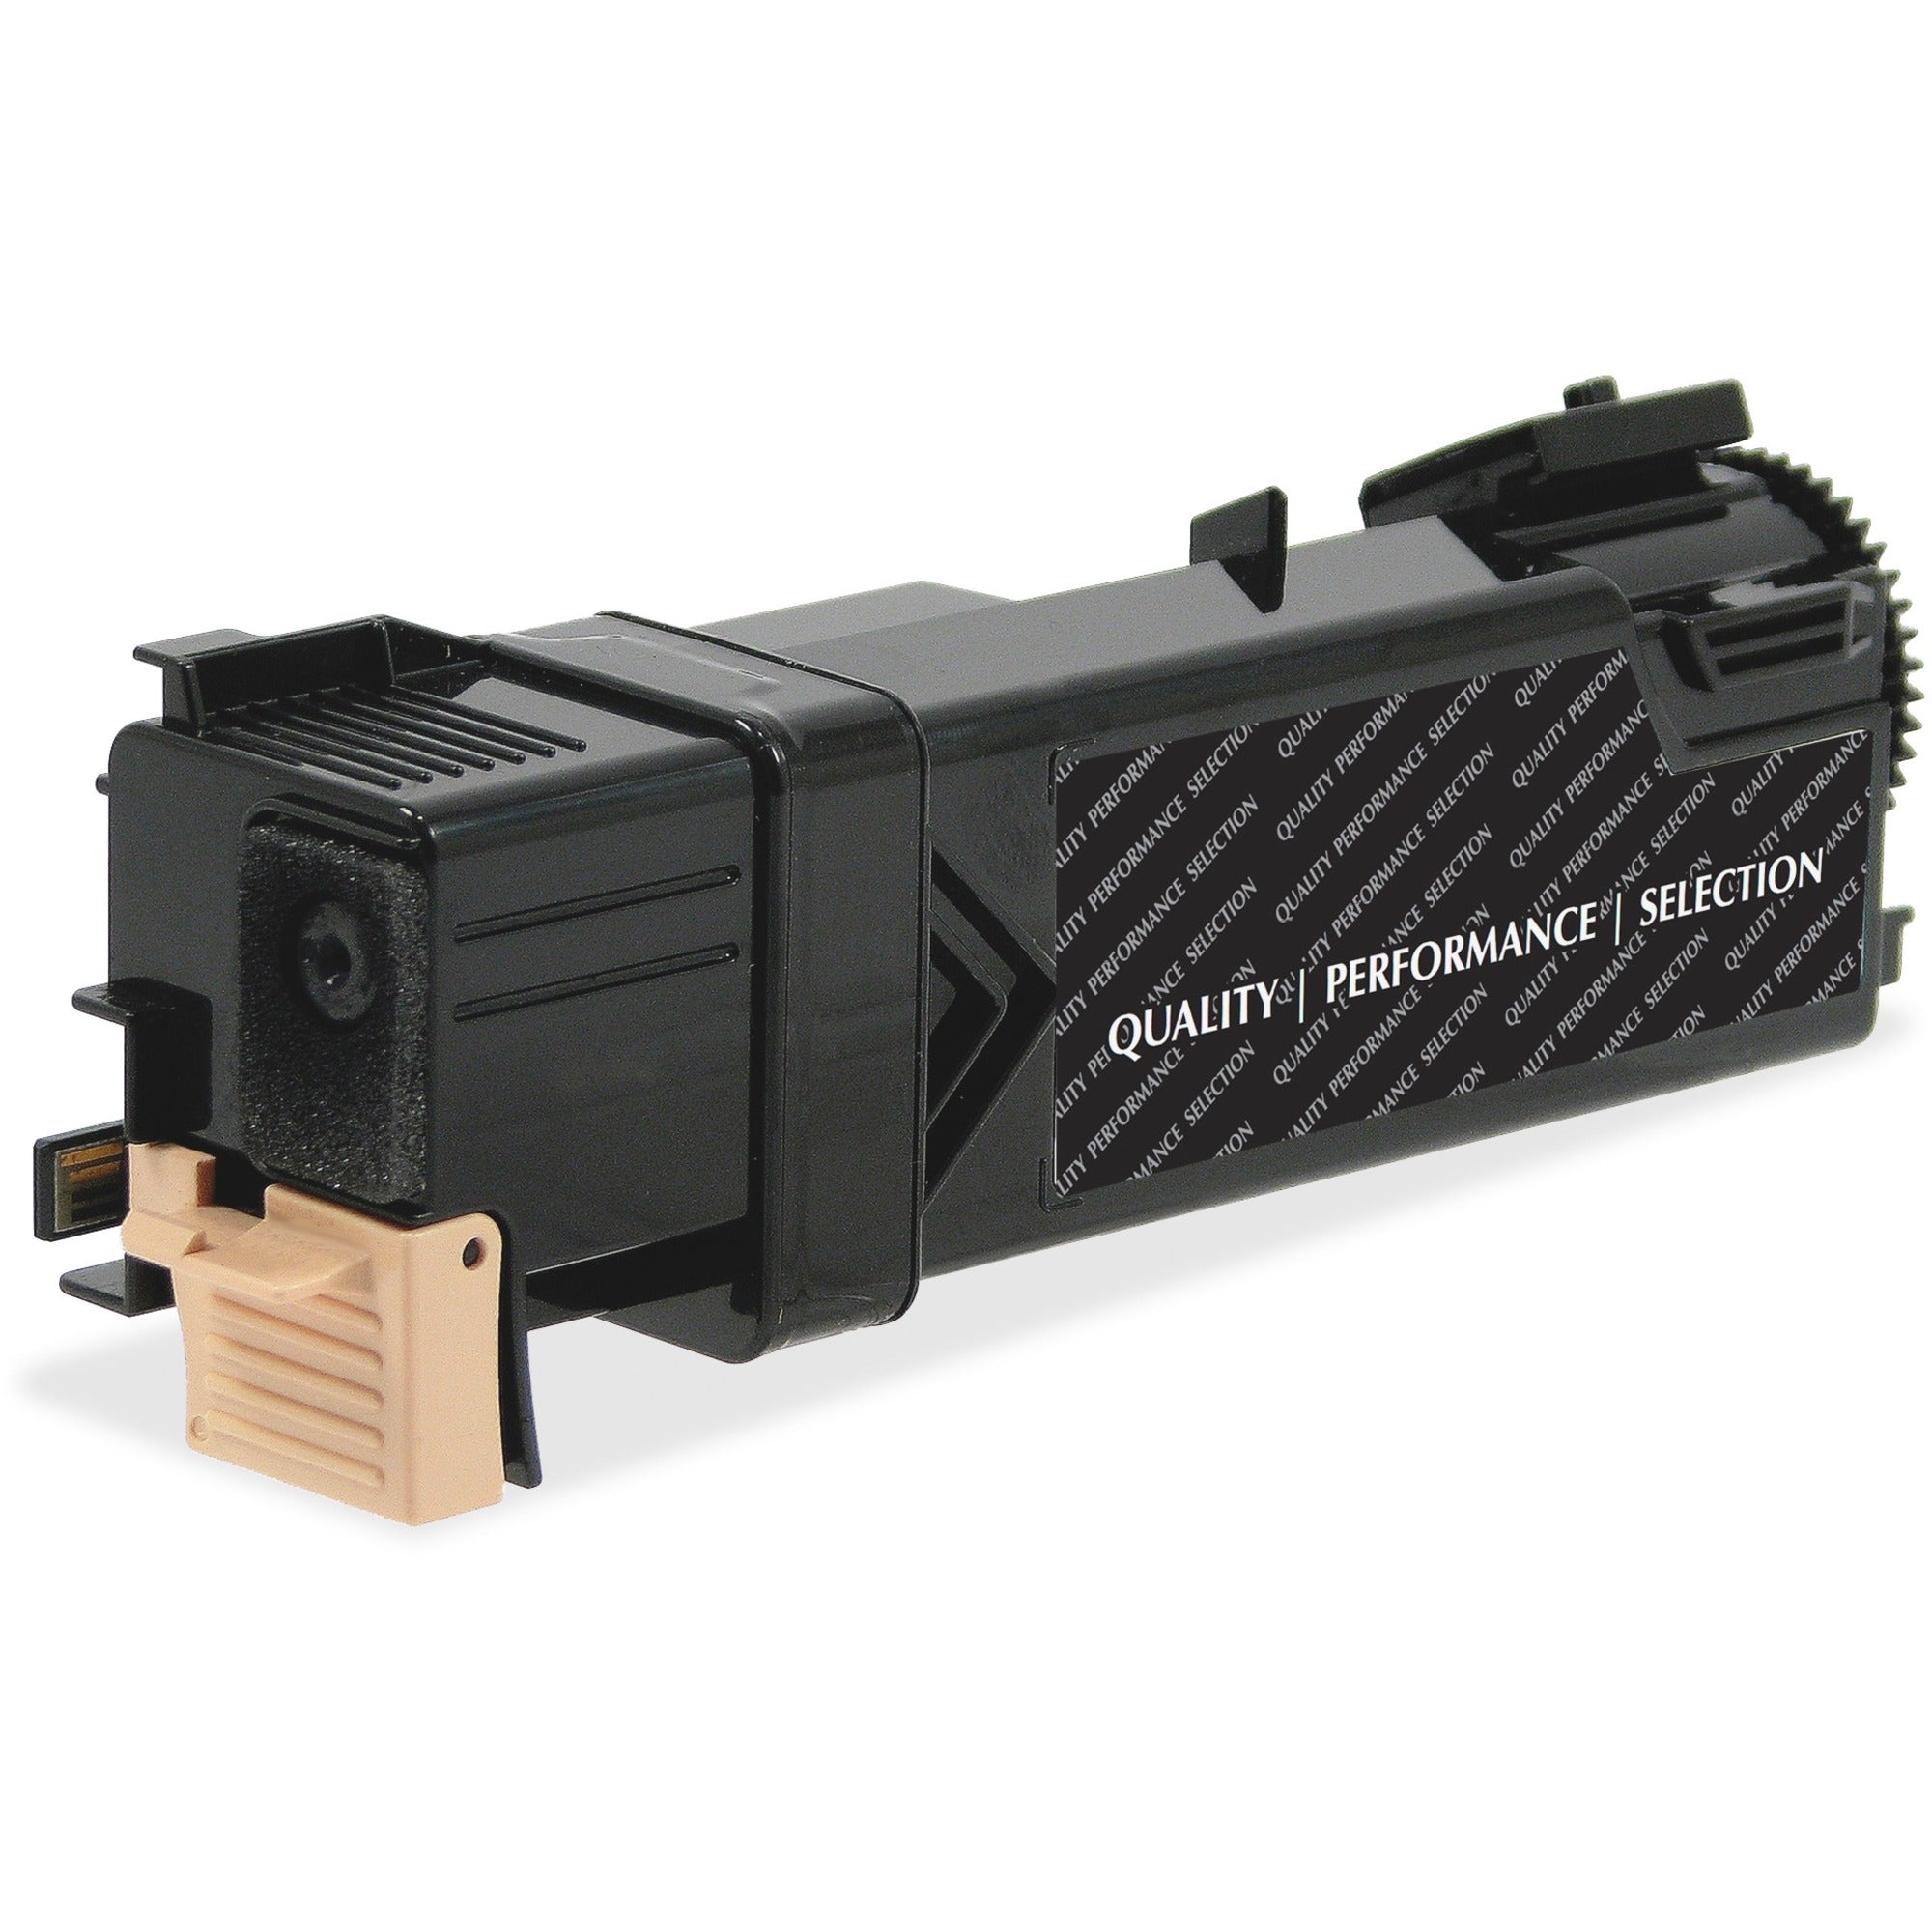 Elite Image Remanufactured Toner Cartridge Alternative For Dell - Laser - 3000 Pages - Black - 1 Each - 1